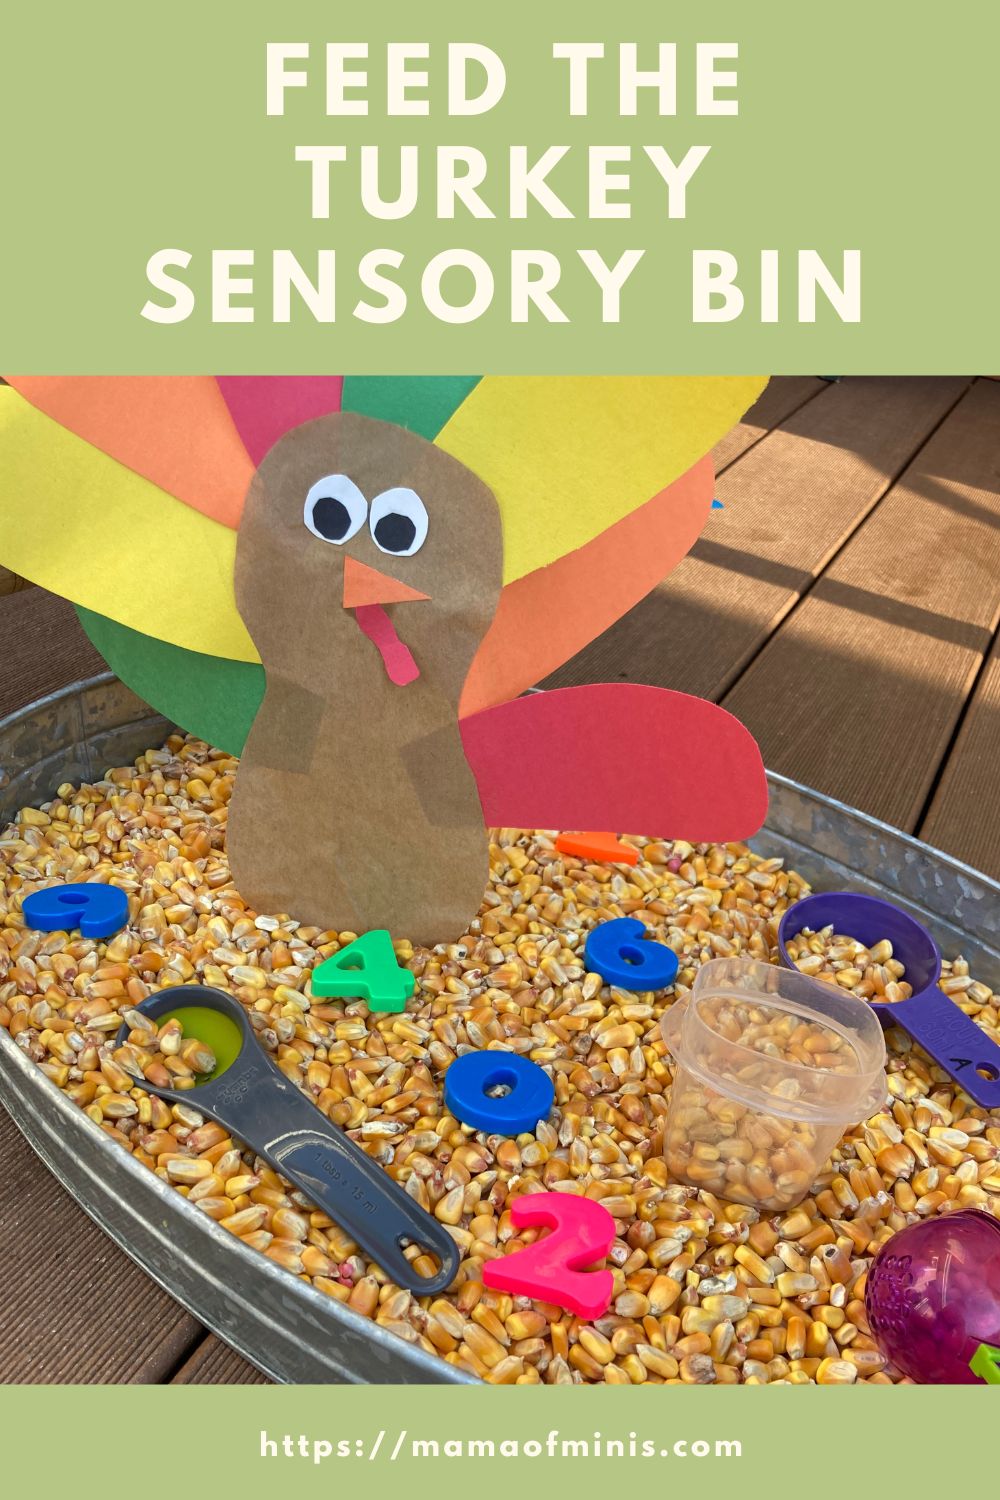 Feed the Turkey Sensory Bin